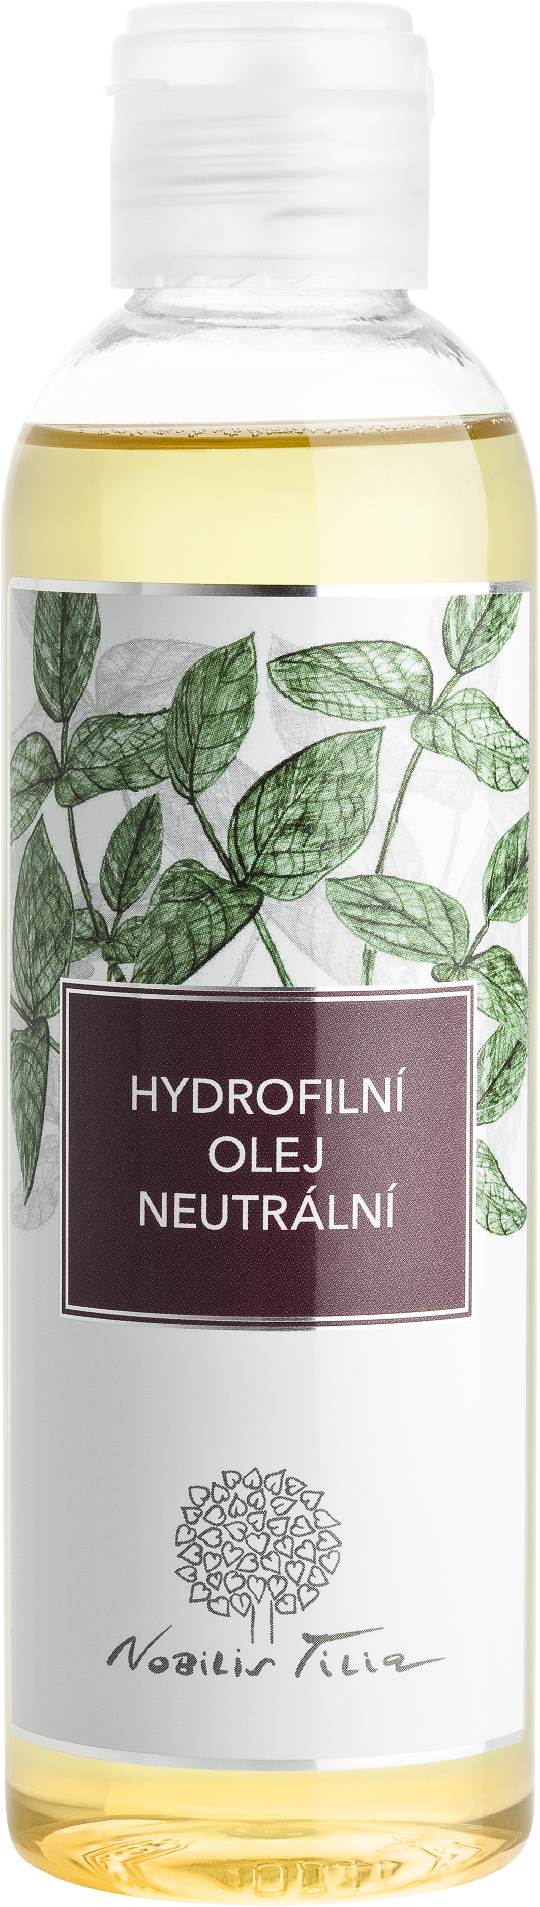 Hydrofilní olej Neutrální: 200 ml